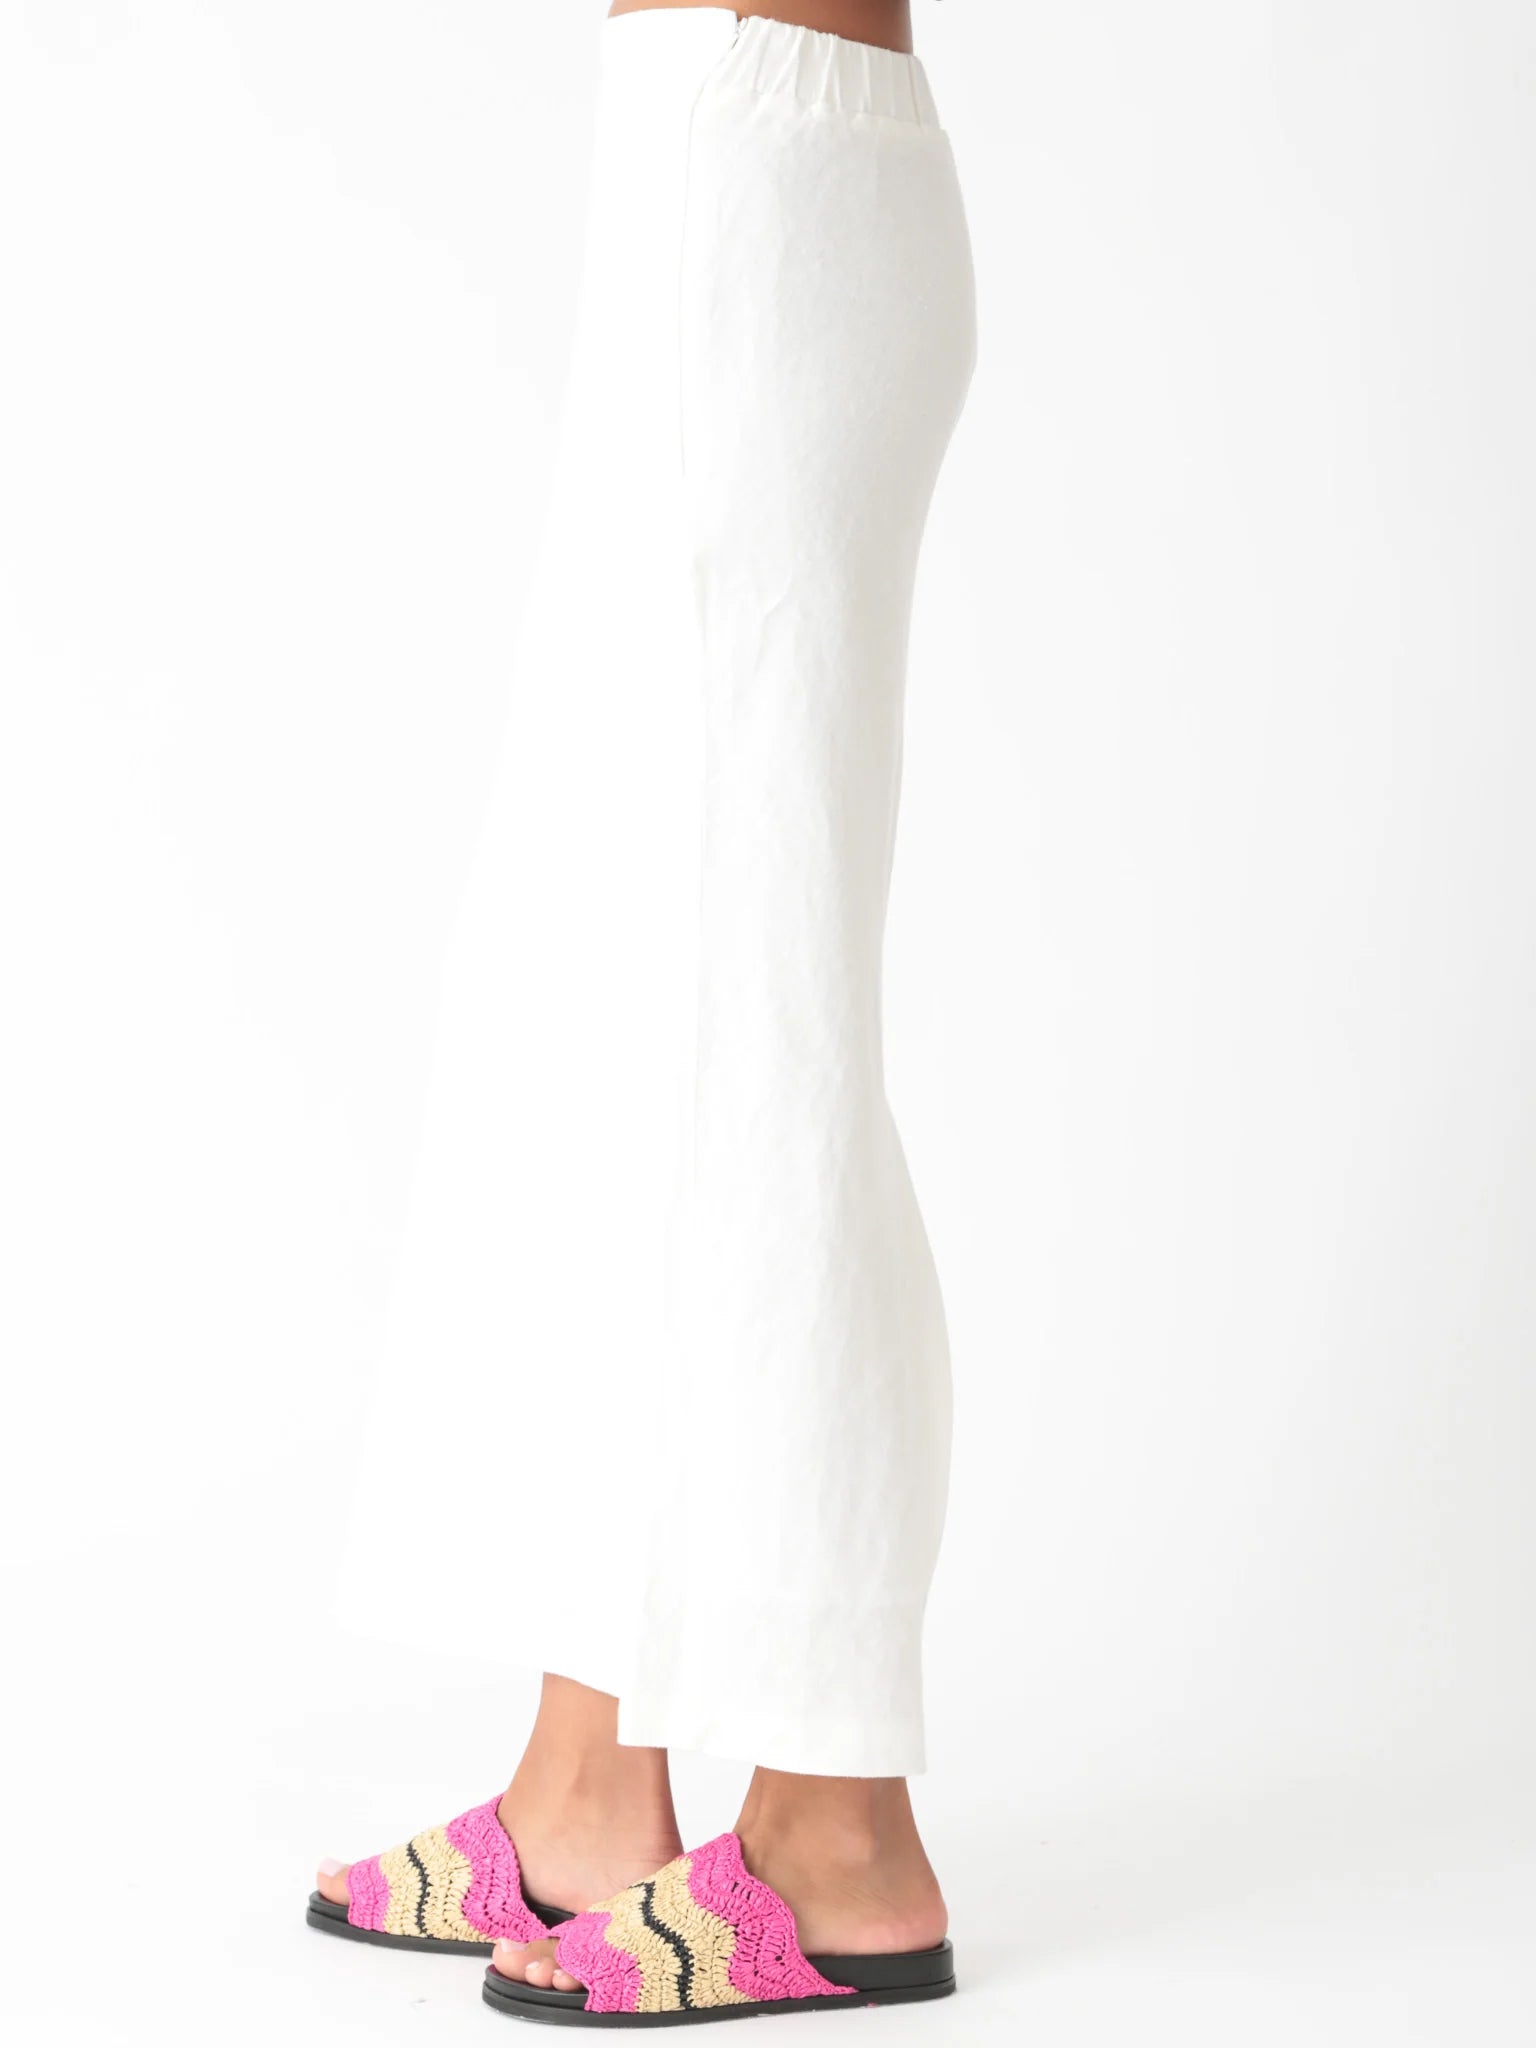 Tiffany Skirt in Ivory (Linen)